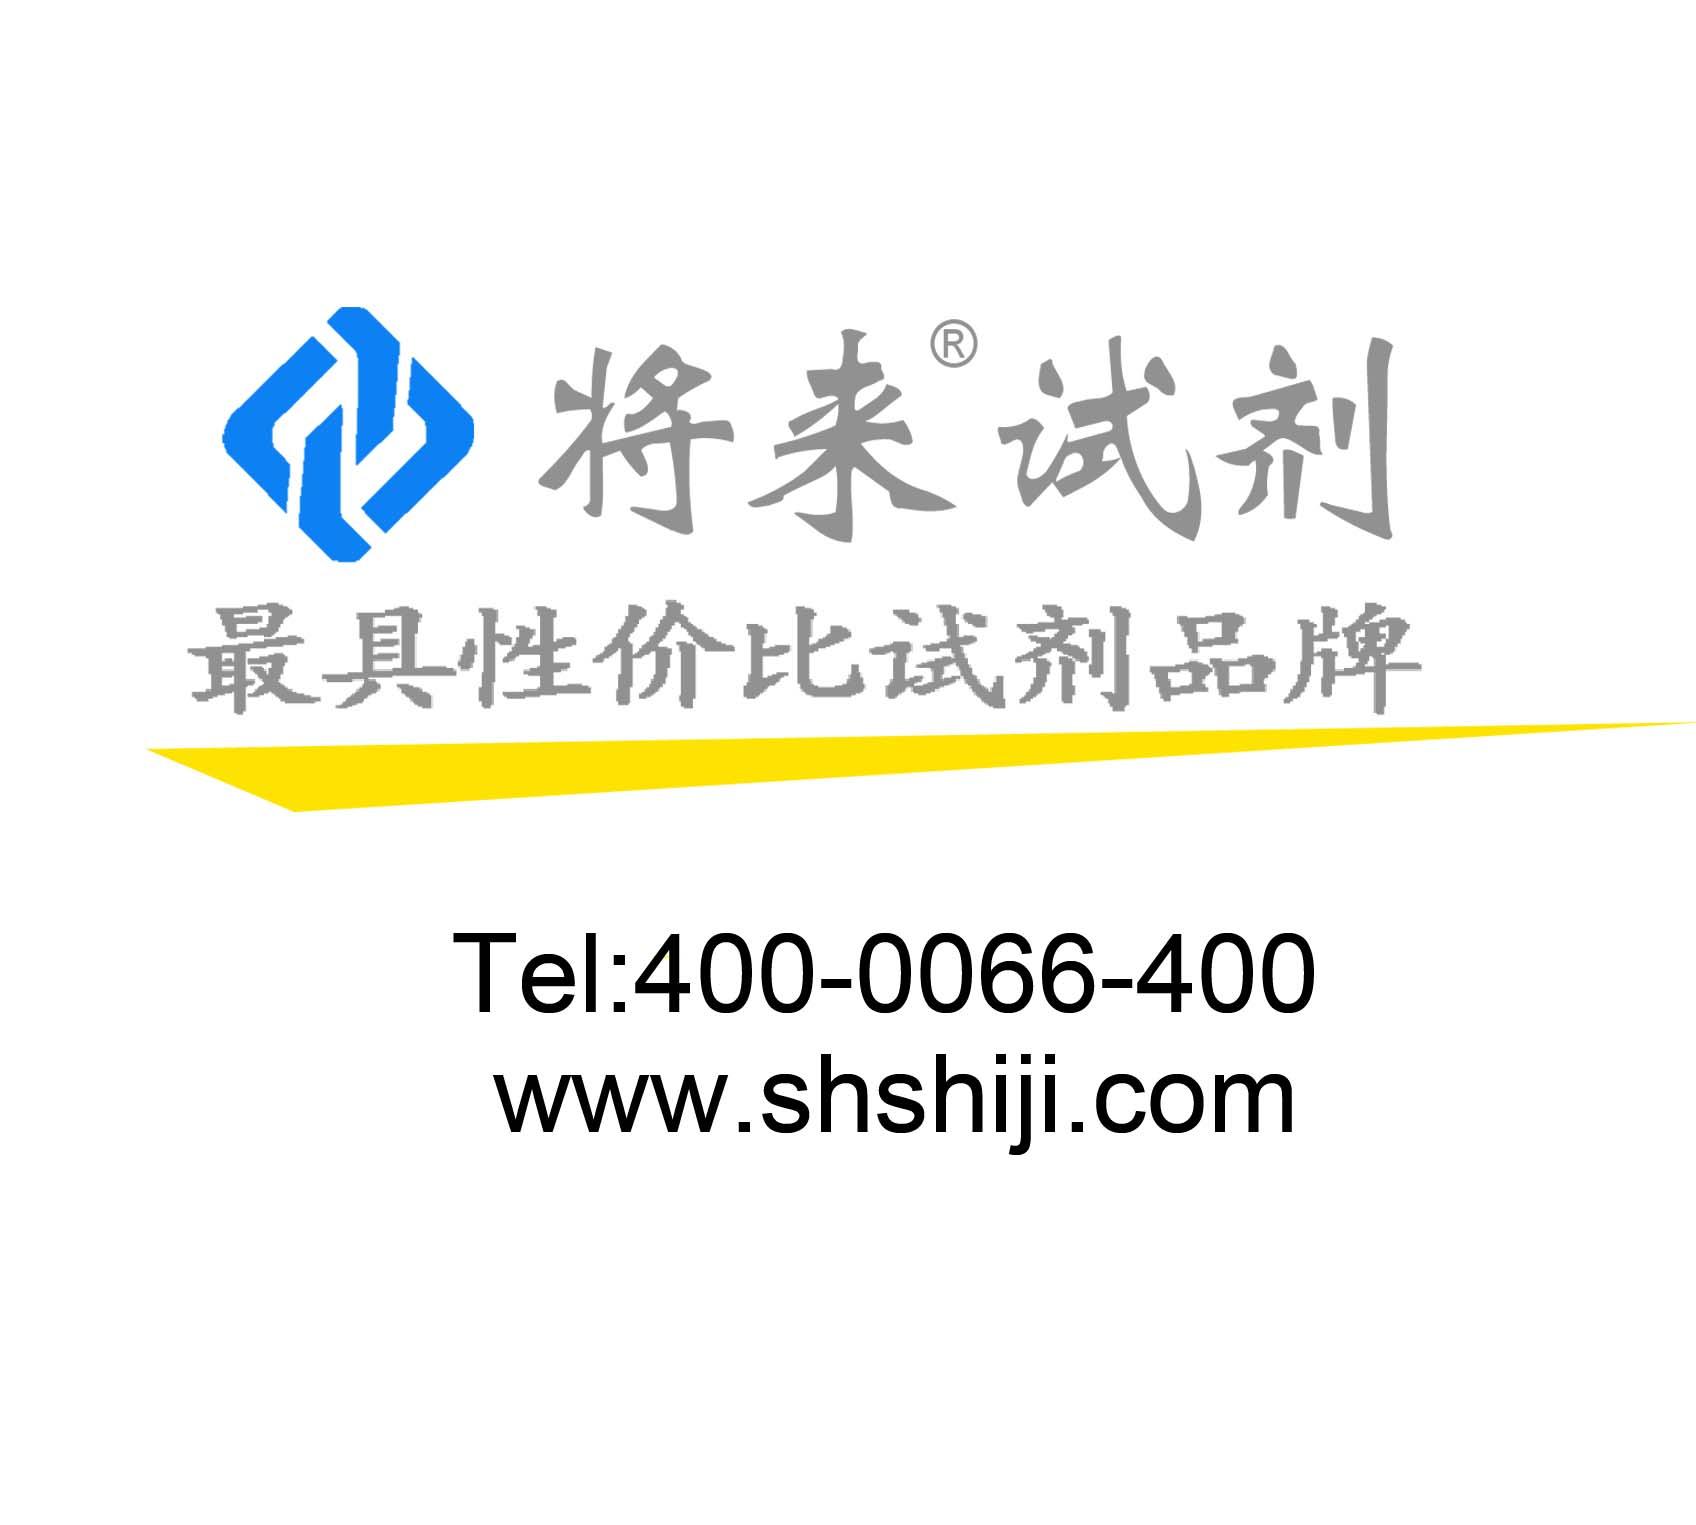 上海将来实业股份有限公司